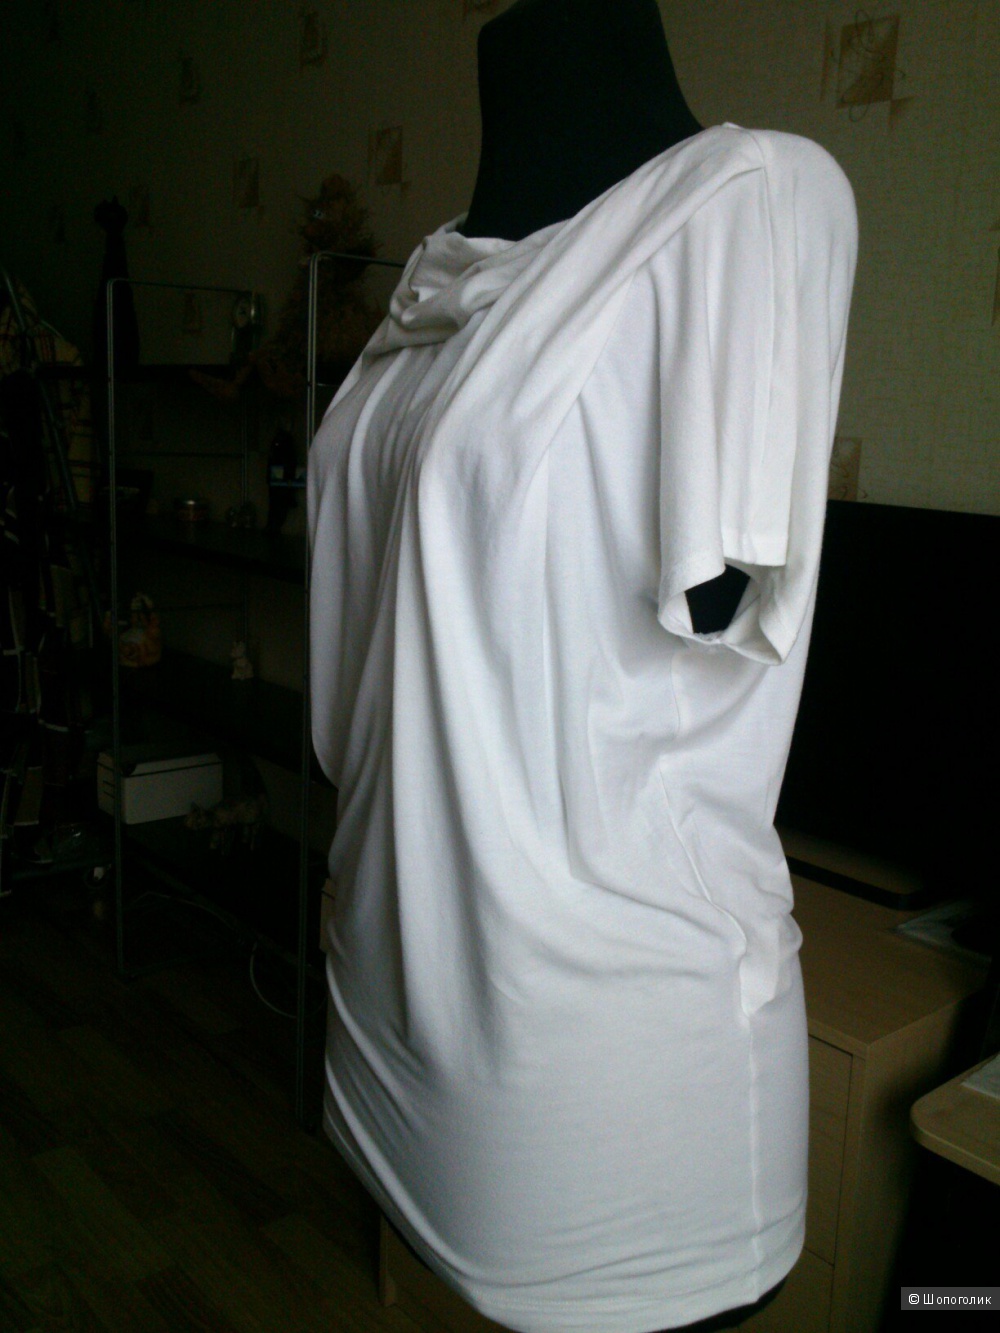 PINKO (Italy). Трикотажная блузка из вискозного джерси. Размер: S.